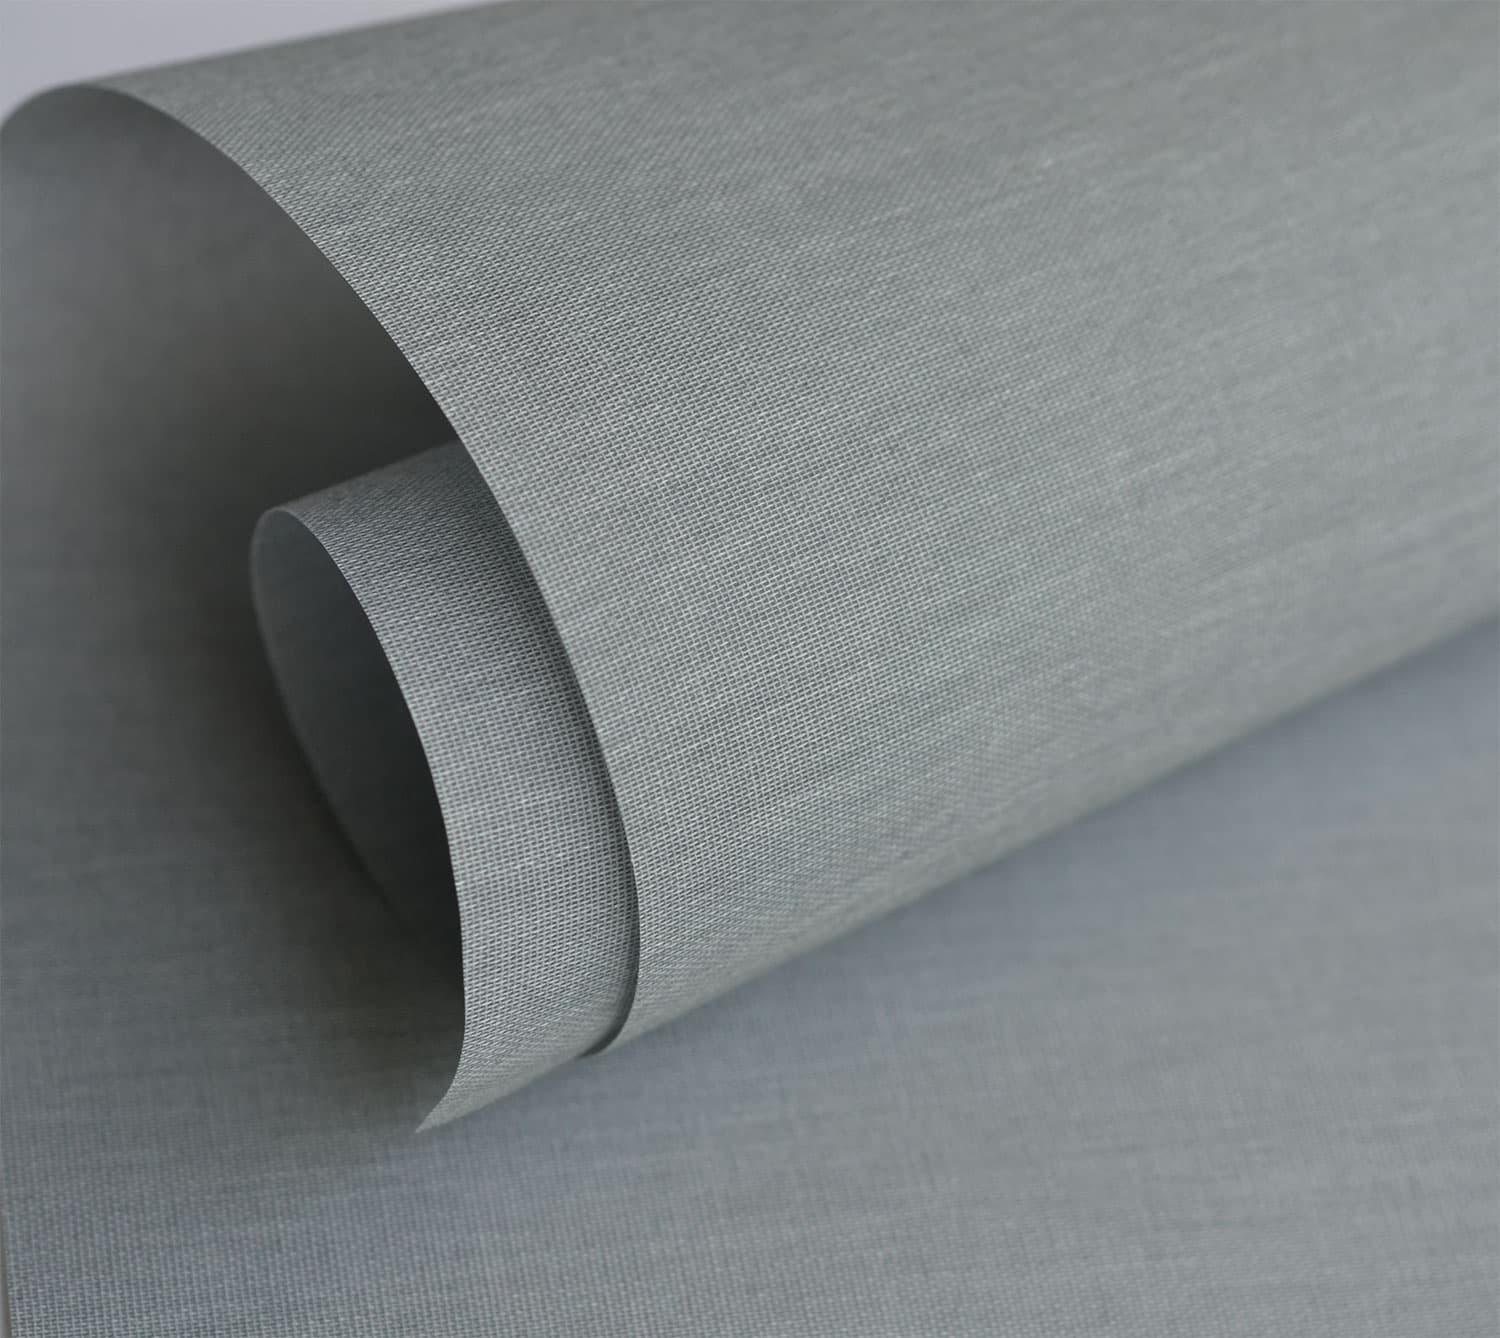 Ткань Омега для рулонных штор. Серый софт. Серый фактурный AFG 154-15 софт,. Техно 1852 серый. Рулон краснодар